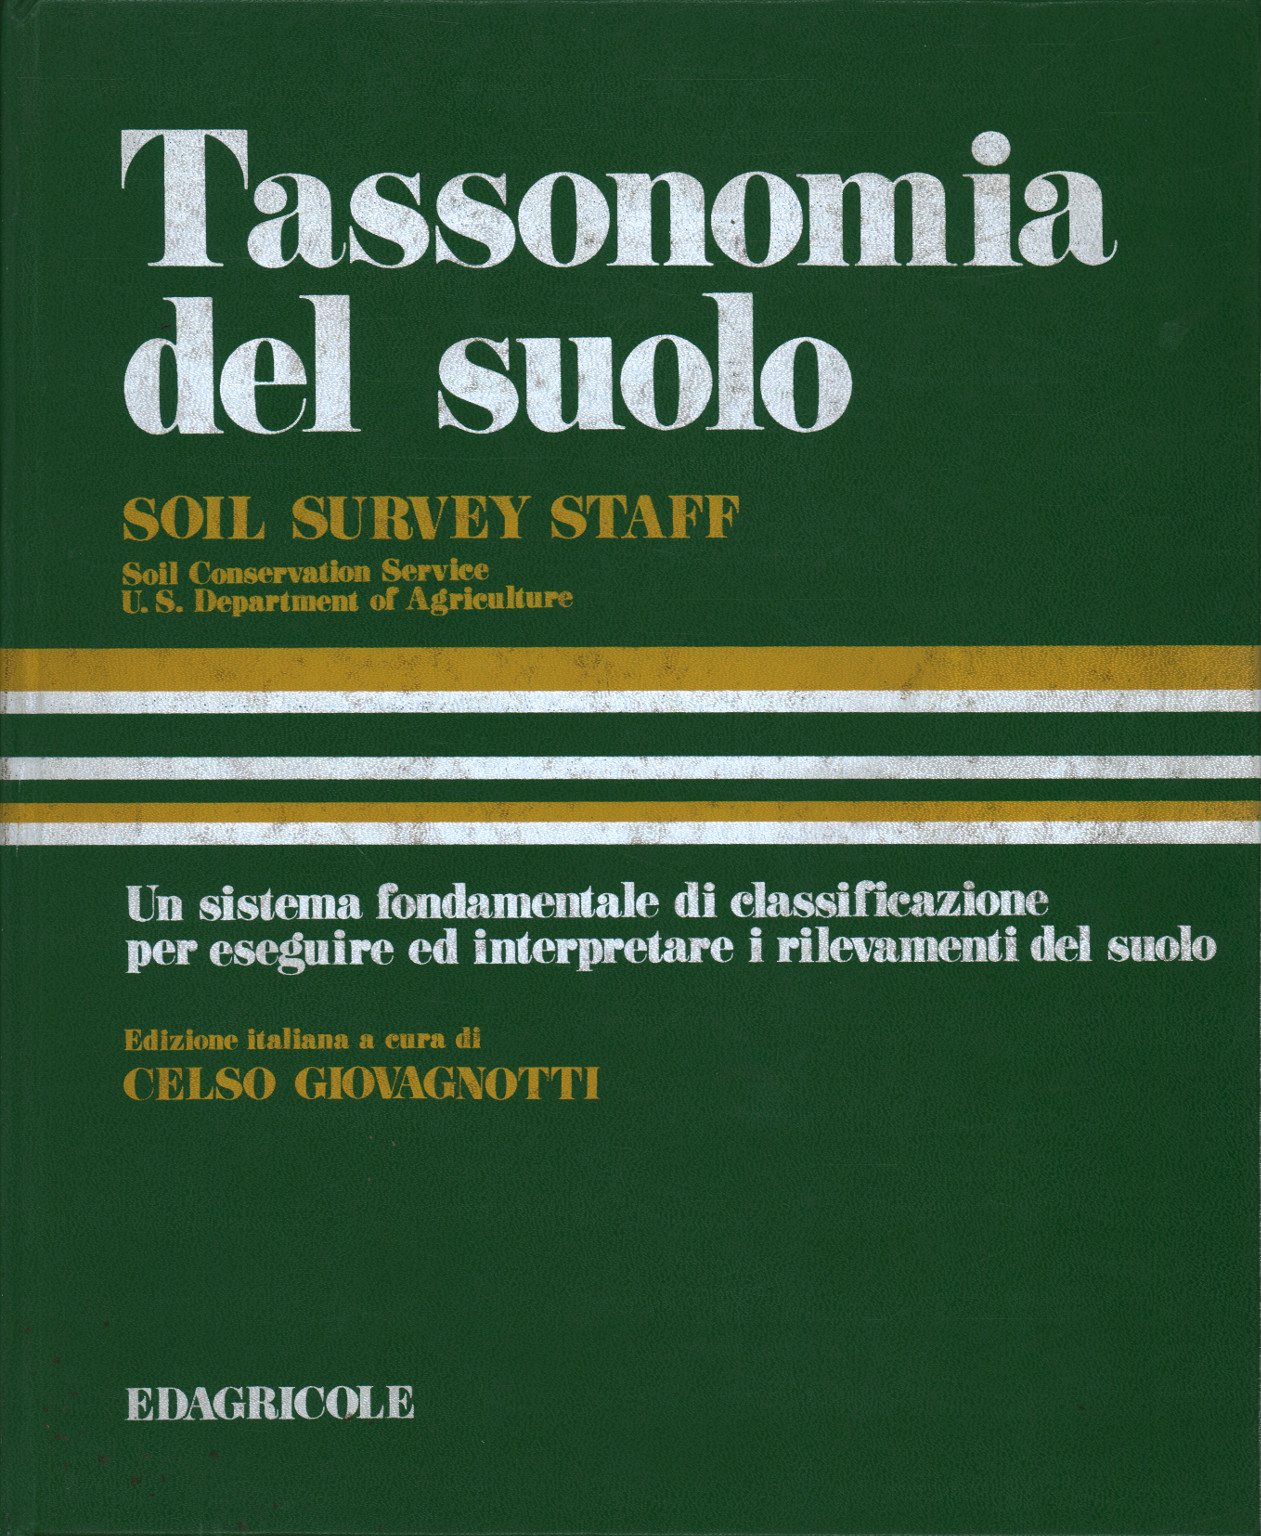 Tassonomia del suolo, s.a.